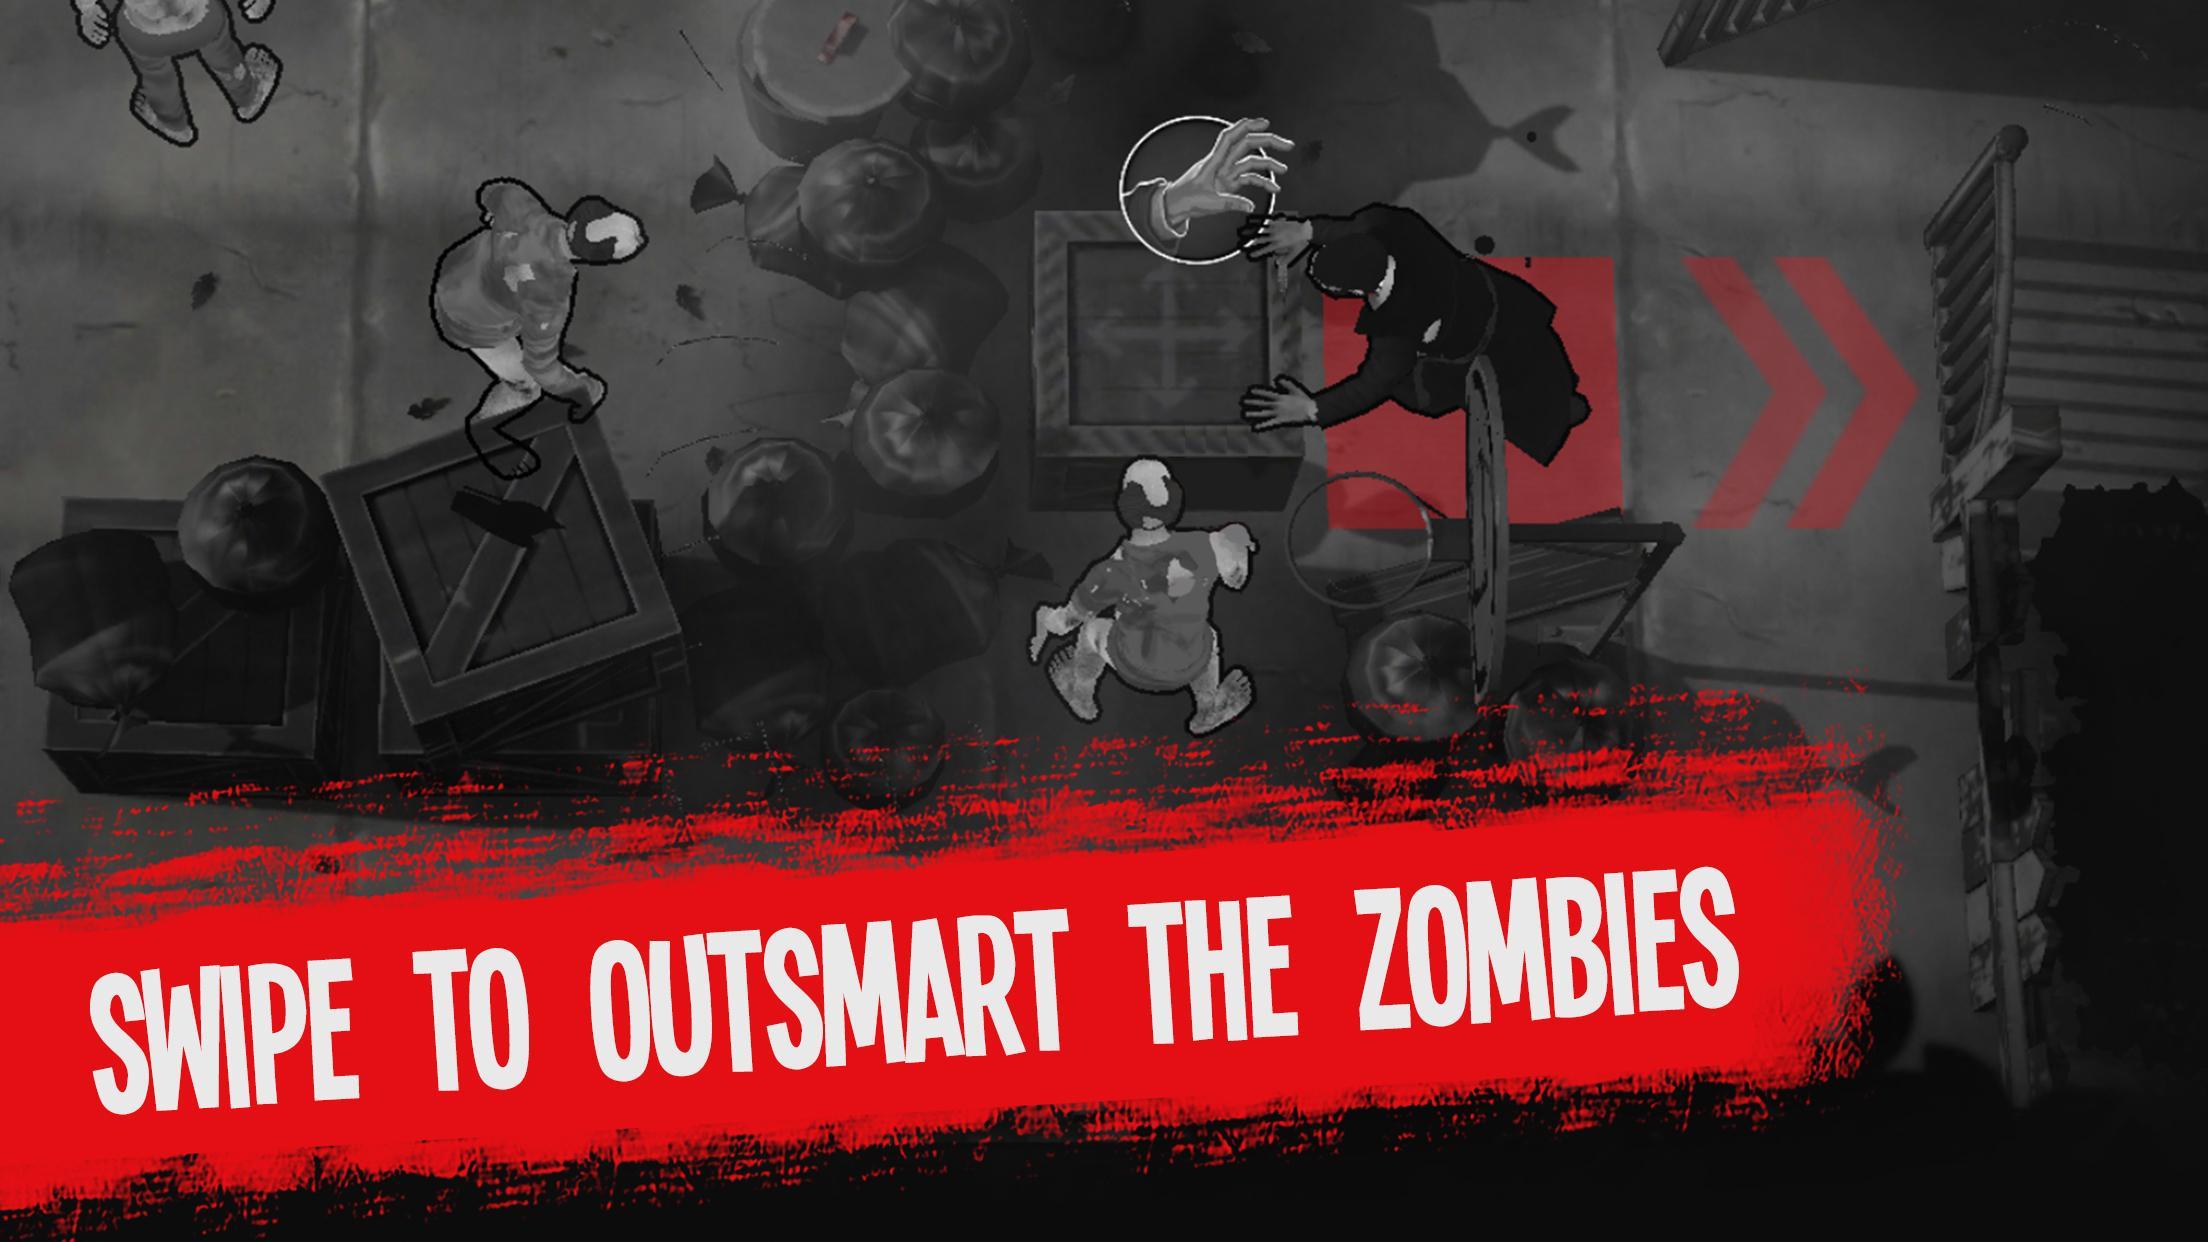 Screenshot 1 of Mossa mortale: sopravvivenza agli zombi 0.1.31